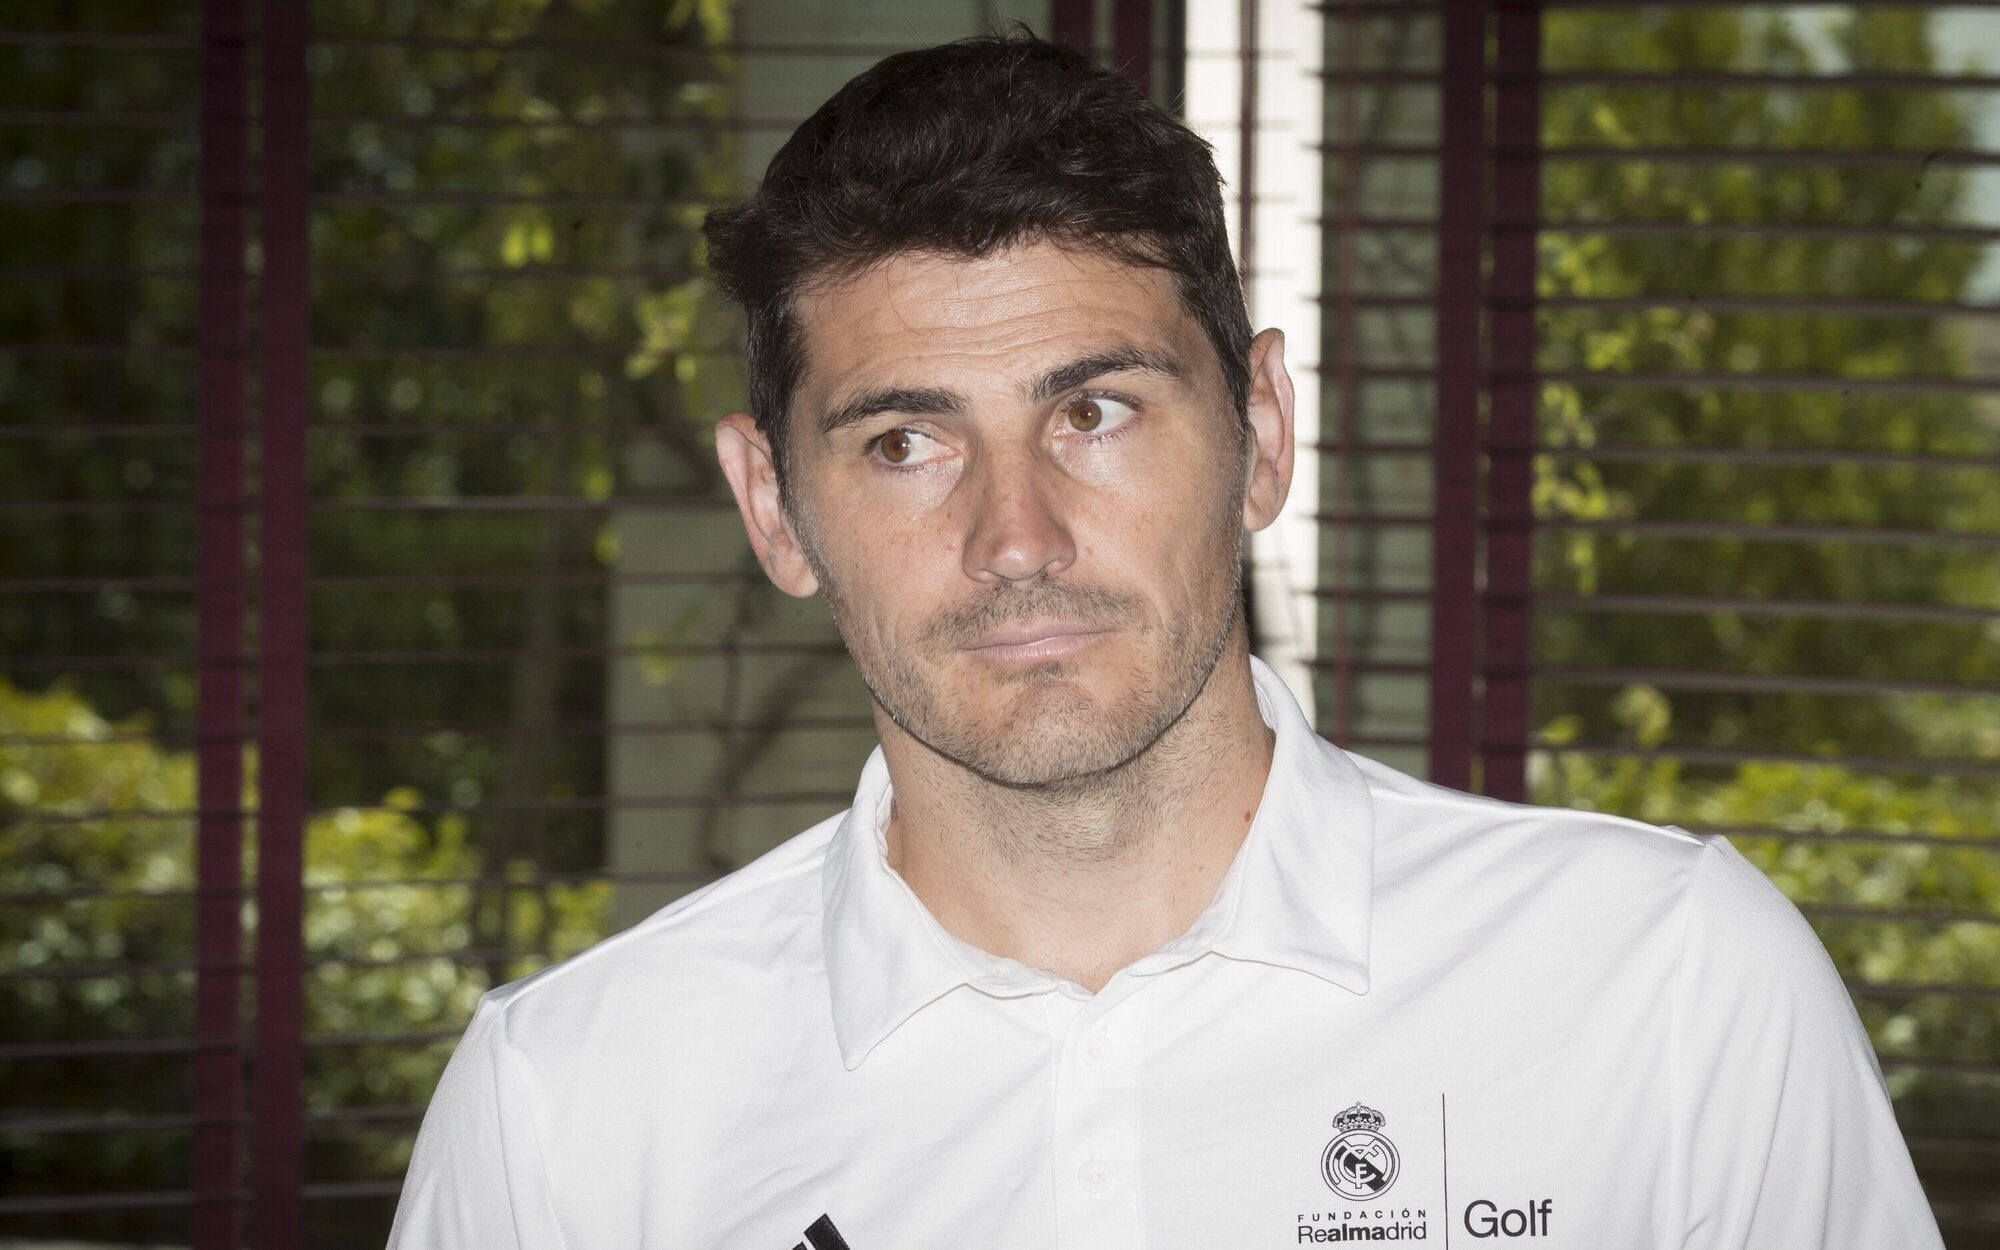 Iker Casillas salta por sorpresa a TVE para comentar el Mundial de Qatar con una exhaustiva cobertura